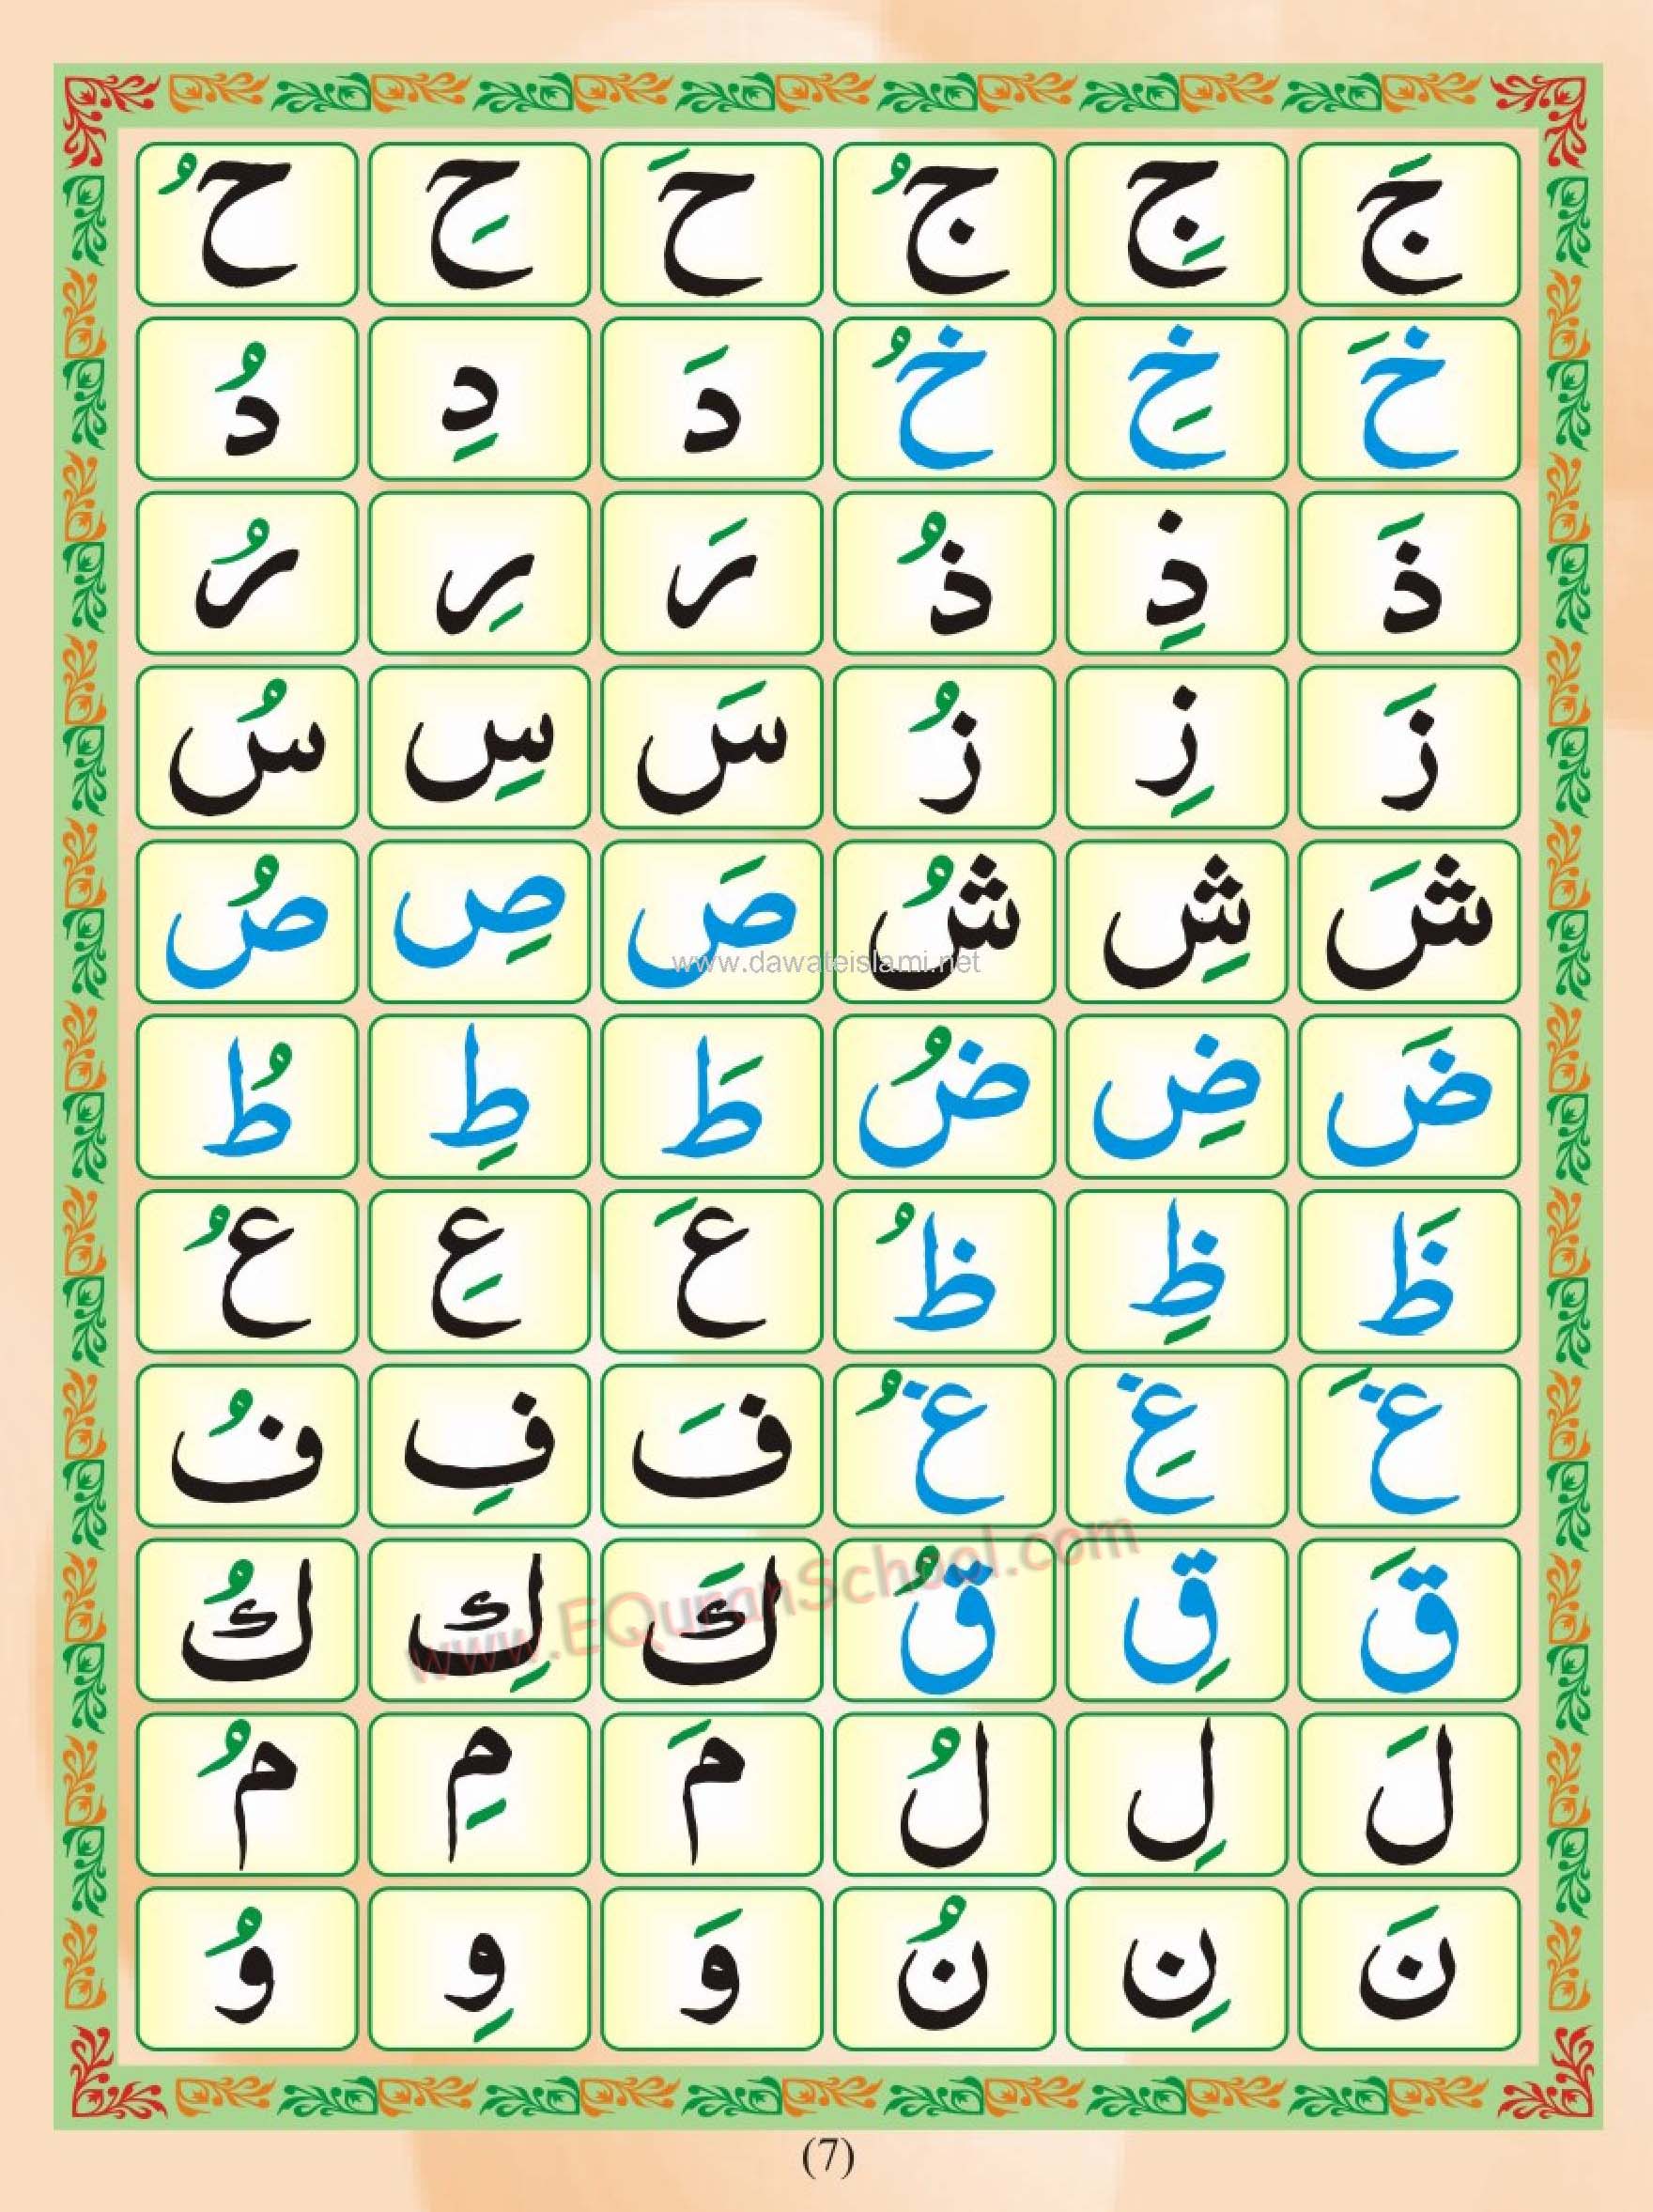 Free Download Yassarnal Quran Urdu Pdf Free